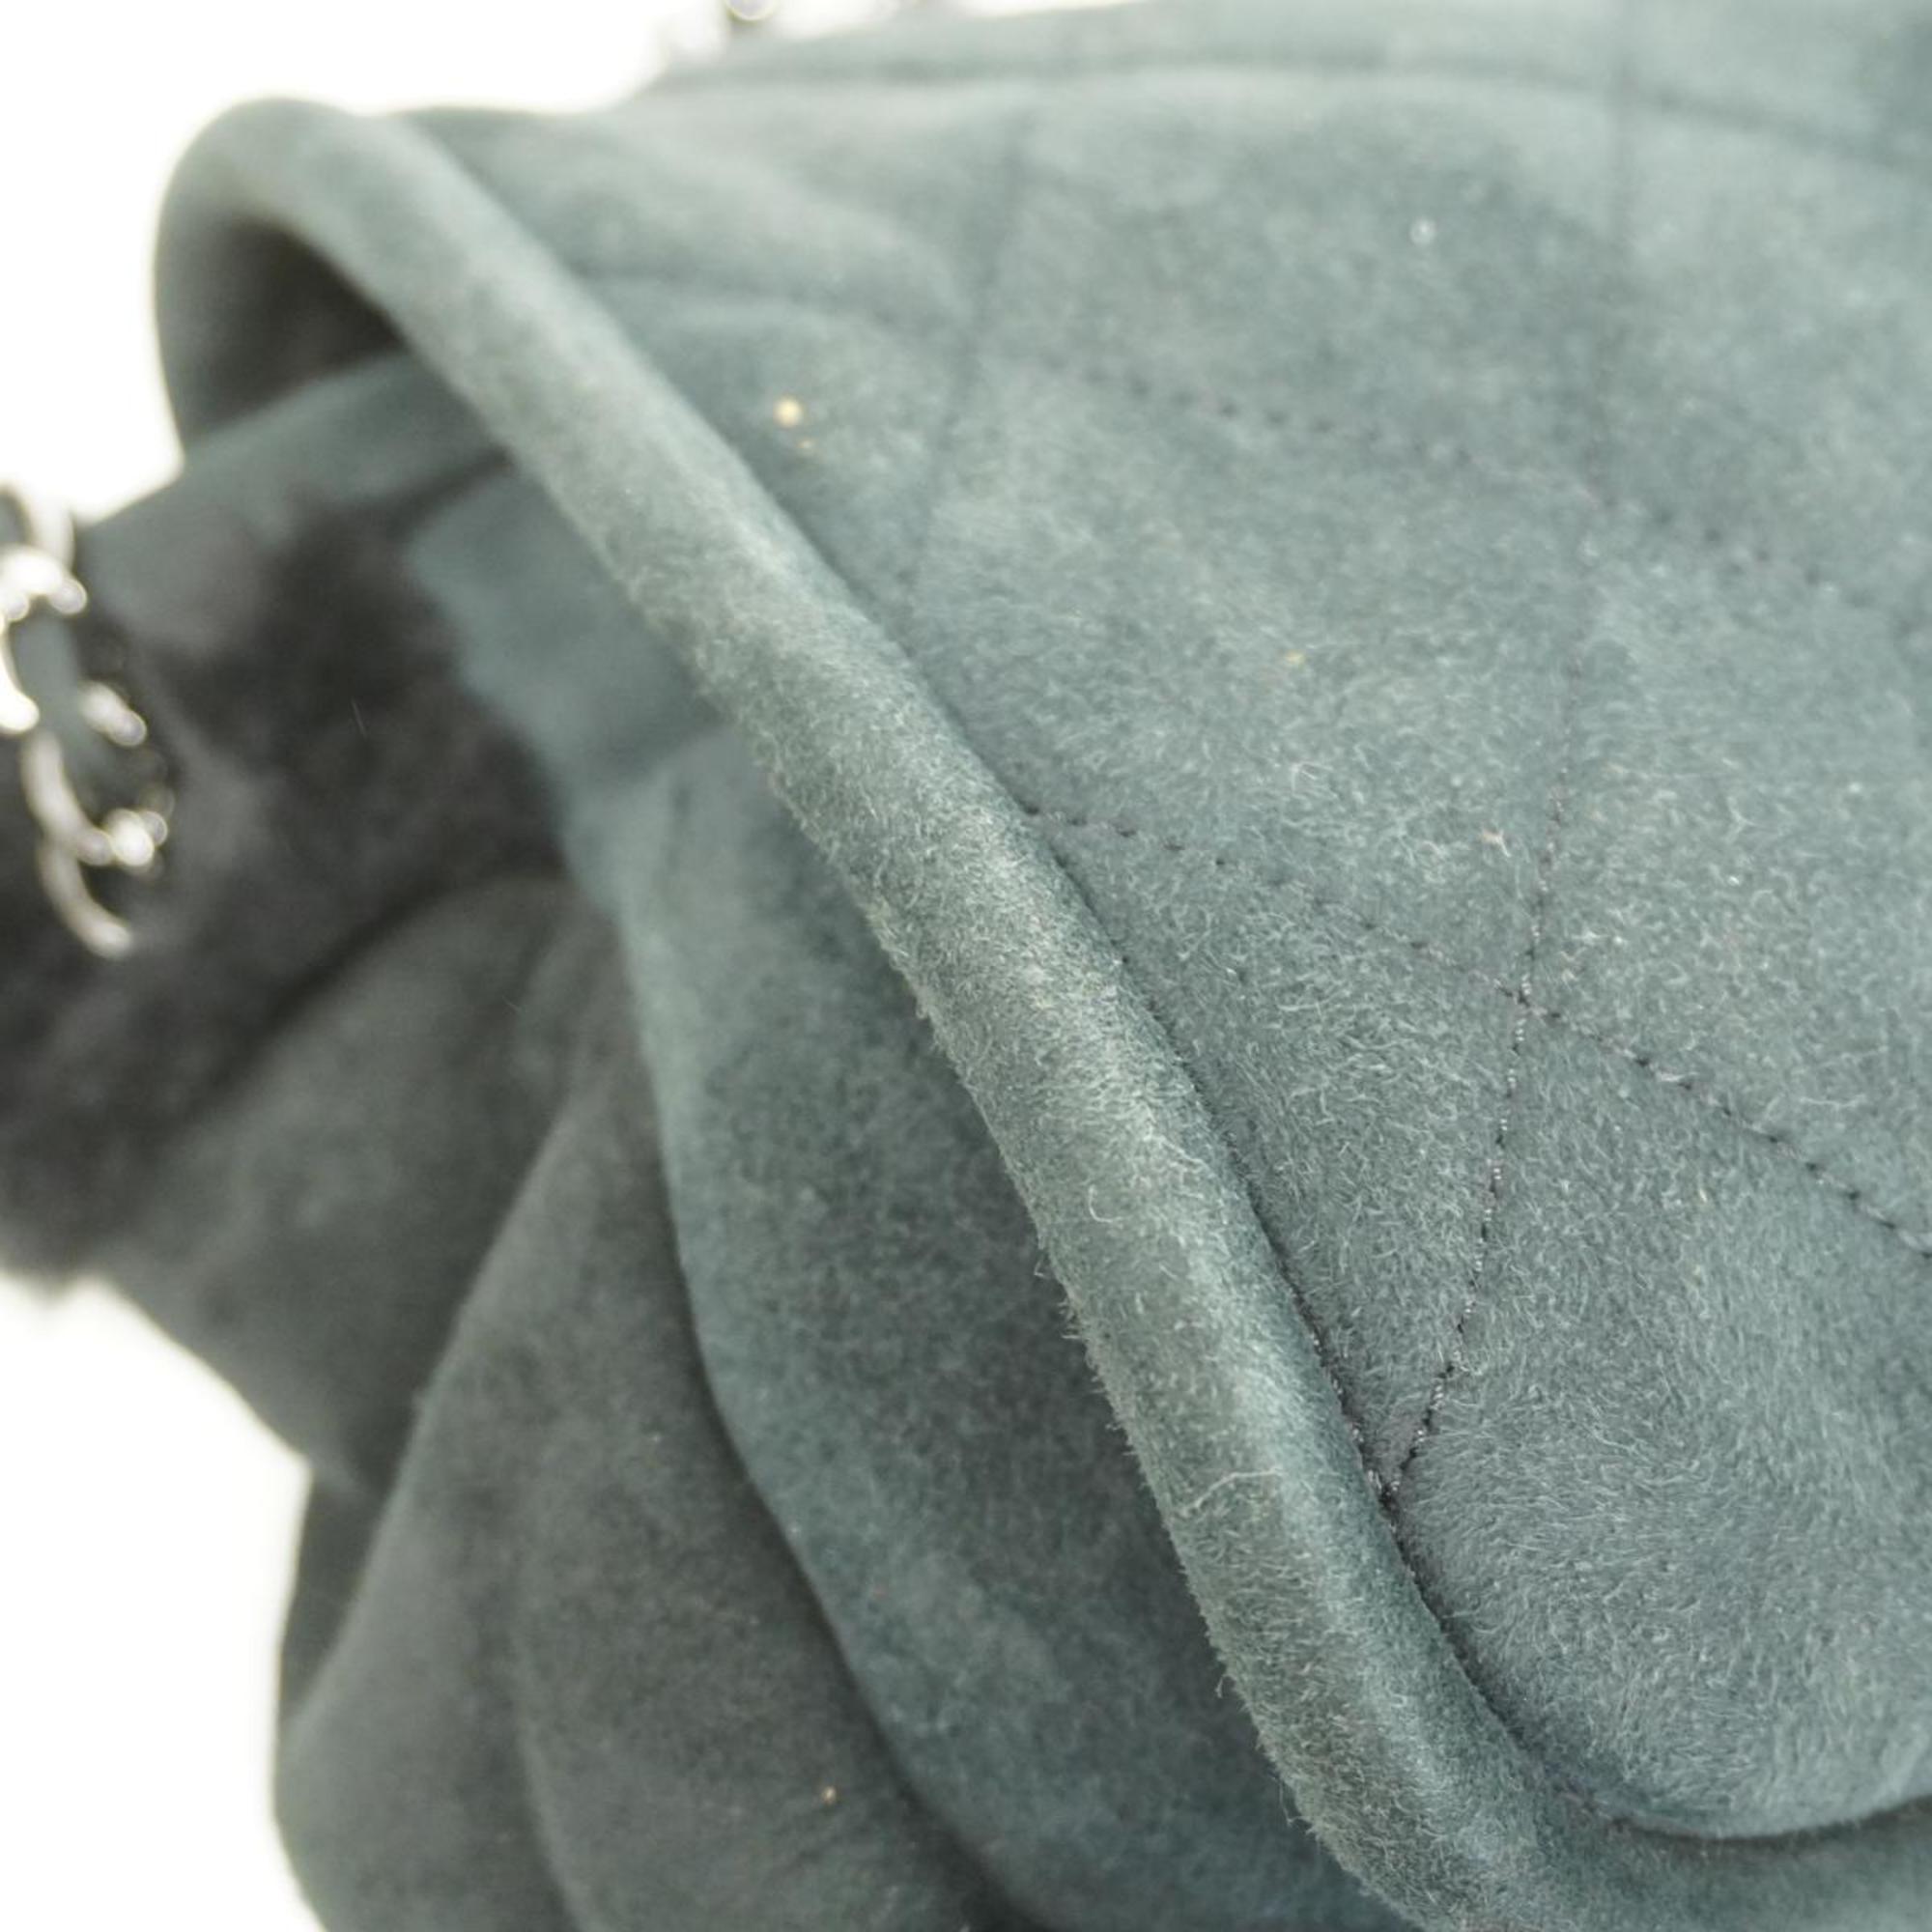 Chanel Shoulder Bag 2.55 W Chain Mouton Black Women's